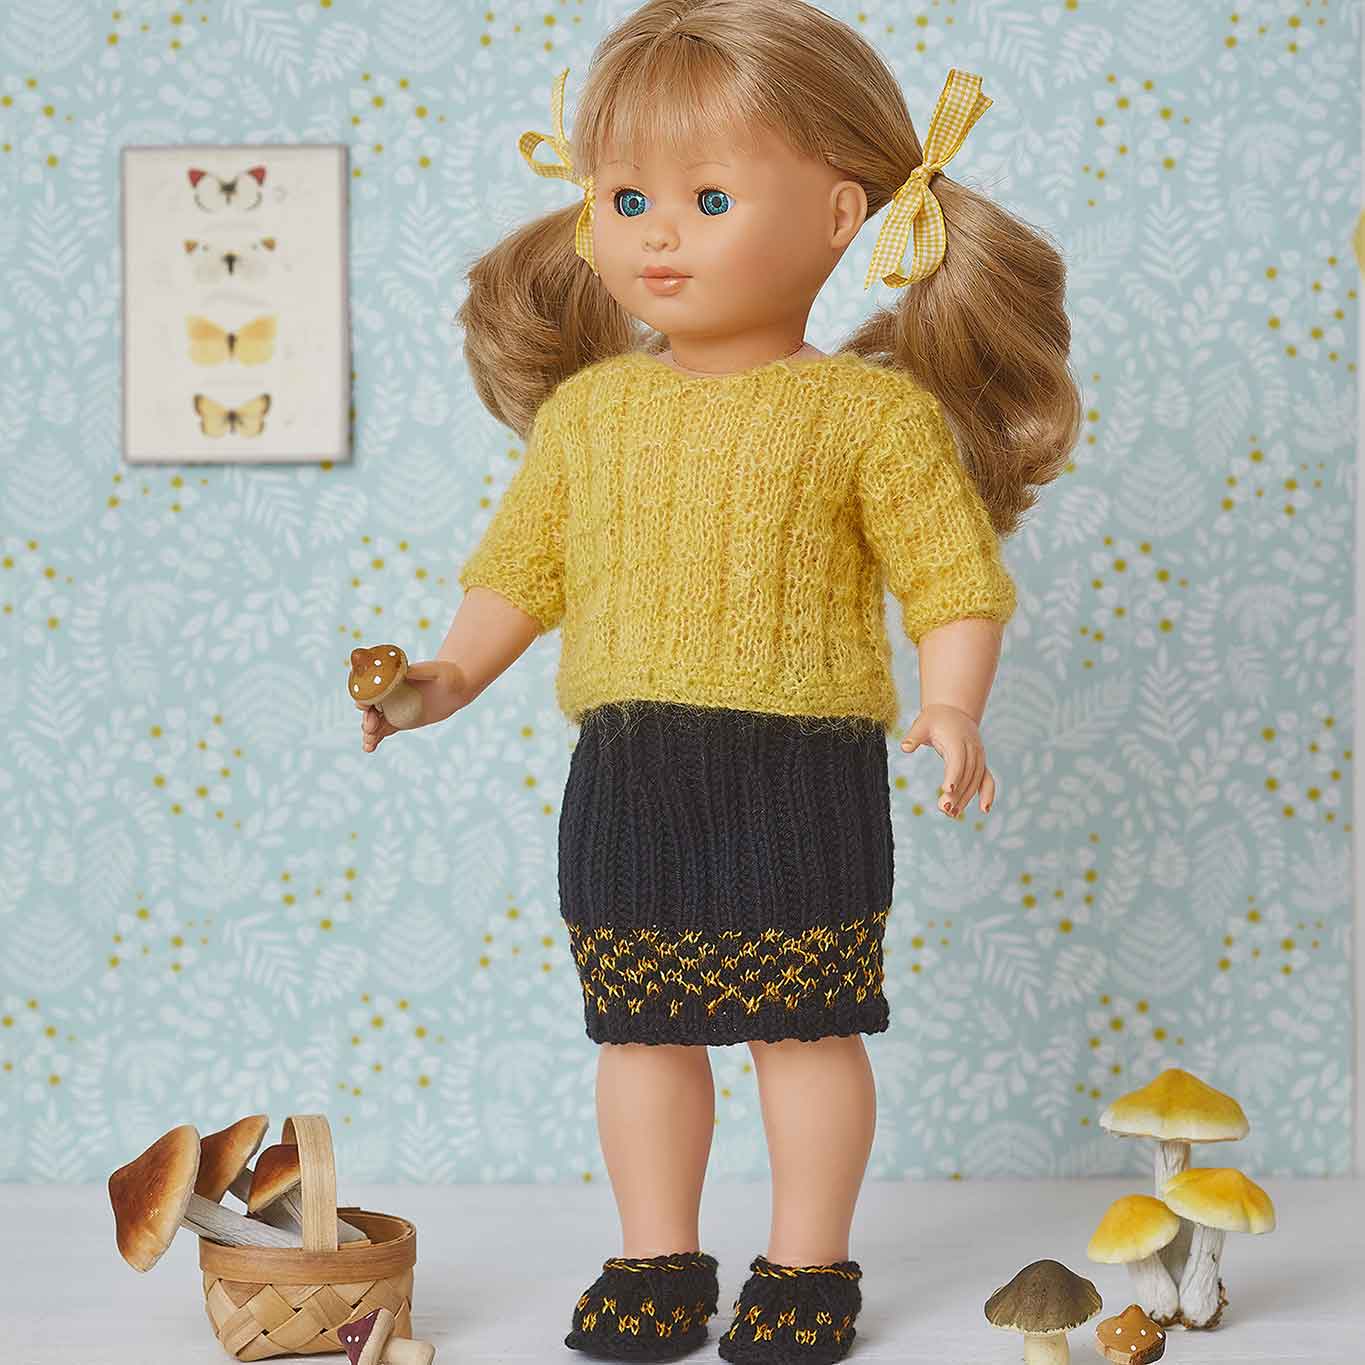 Tricoter des vêtements de poupée : 5 erreurs à éviter